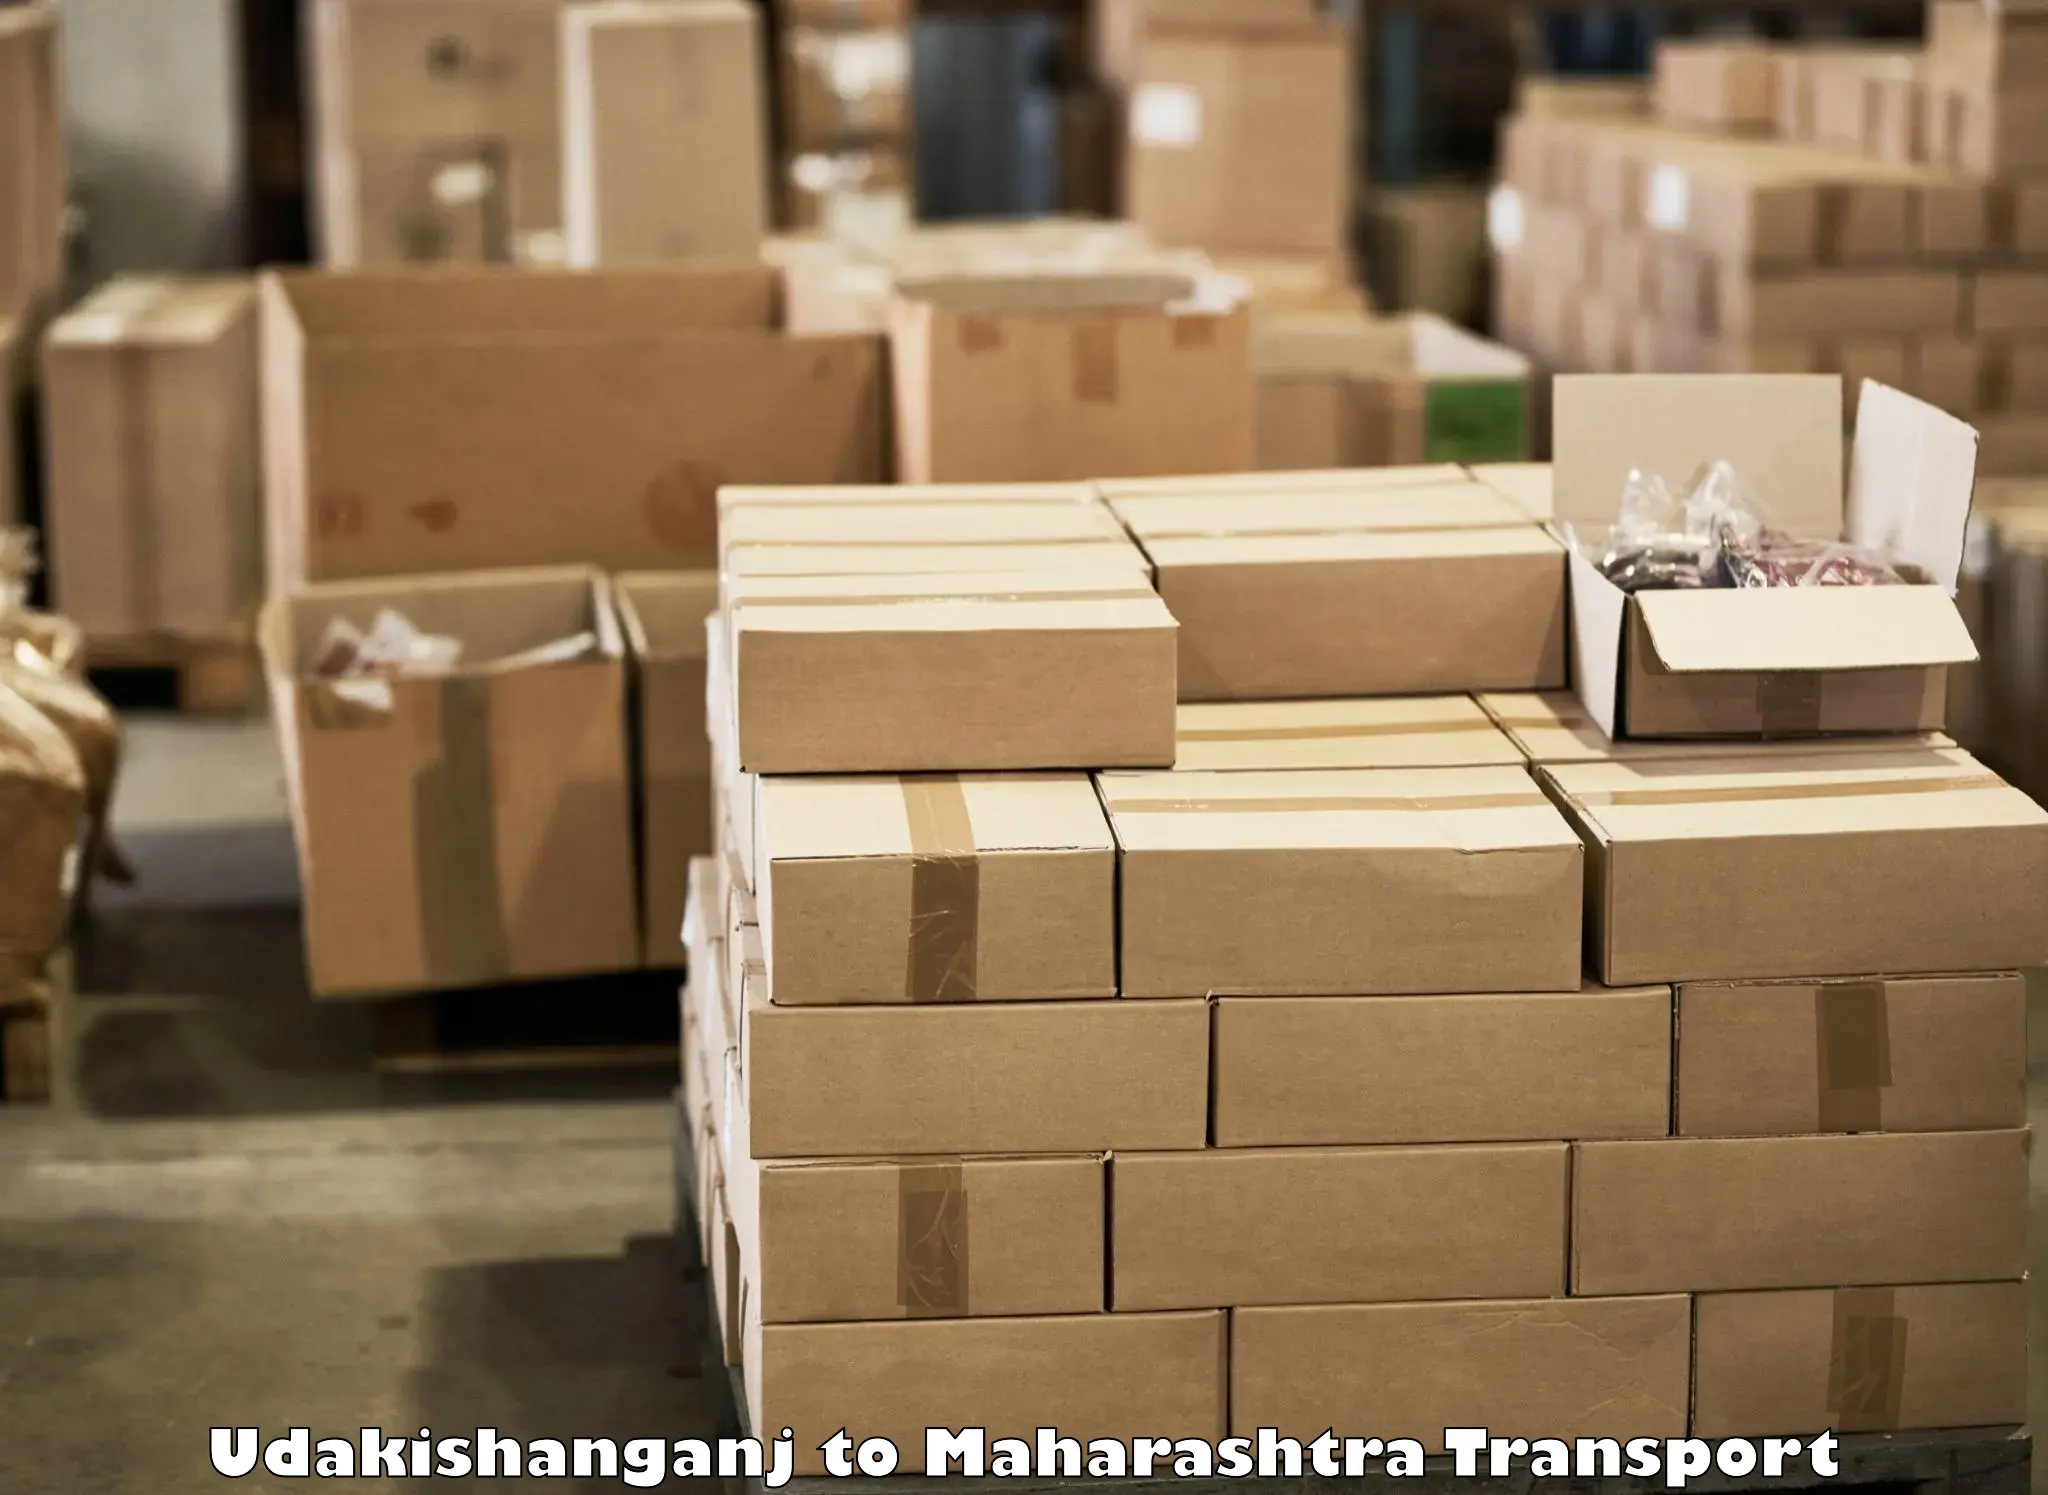 Container transportation services Udakishanganj to Maharashtra